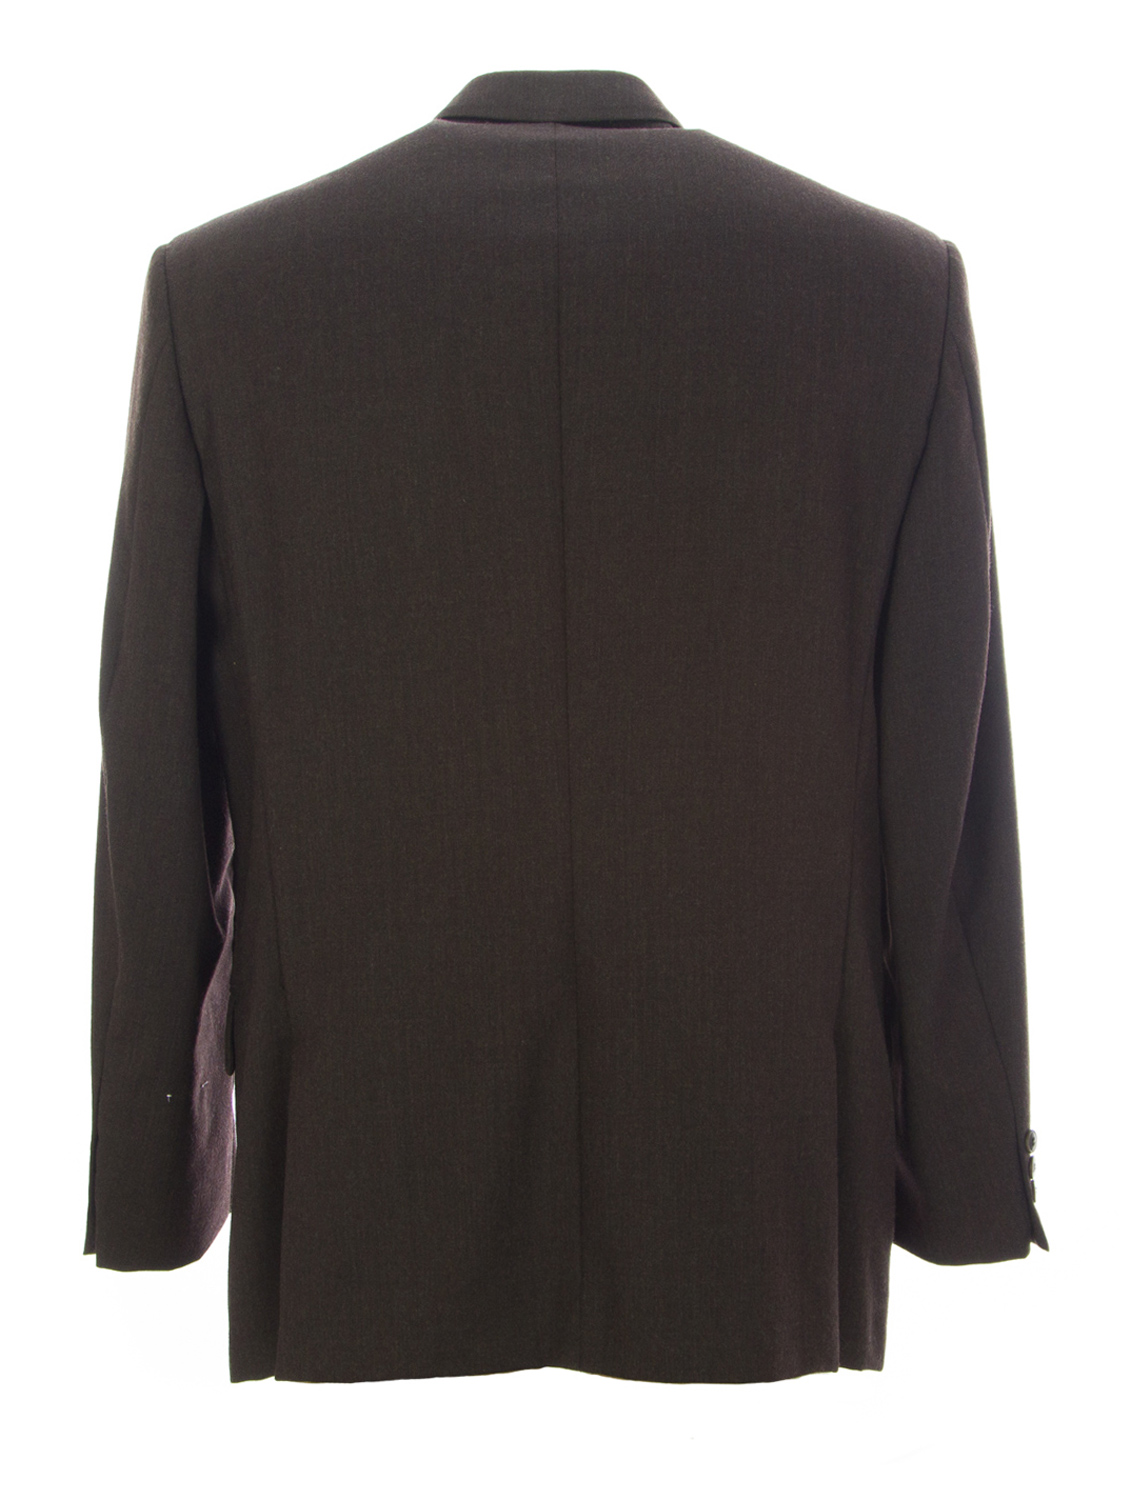 PIERRE CARDIN Men's Brown Wool Lined Suit Blazer 12502N Size 42 R $385 ...